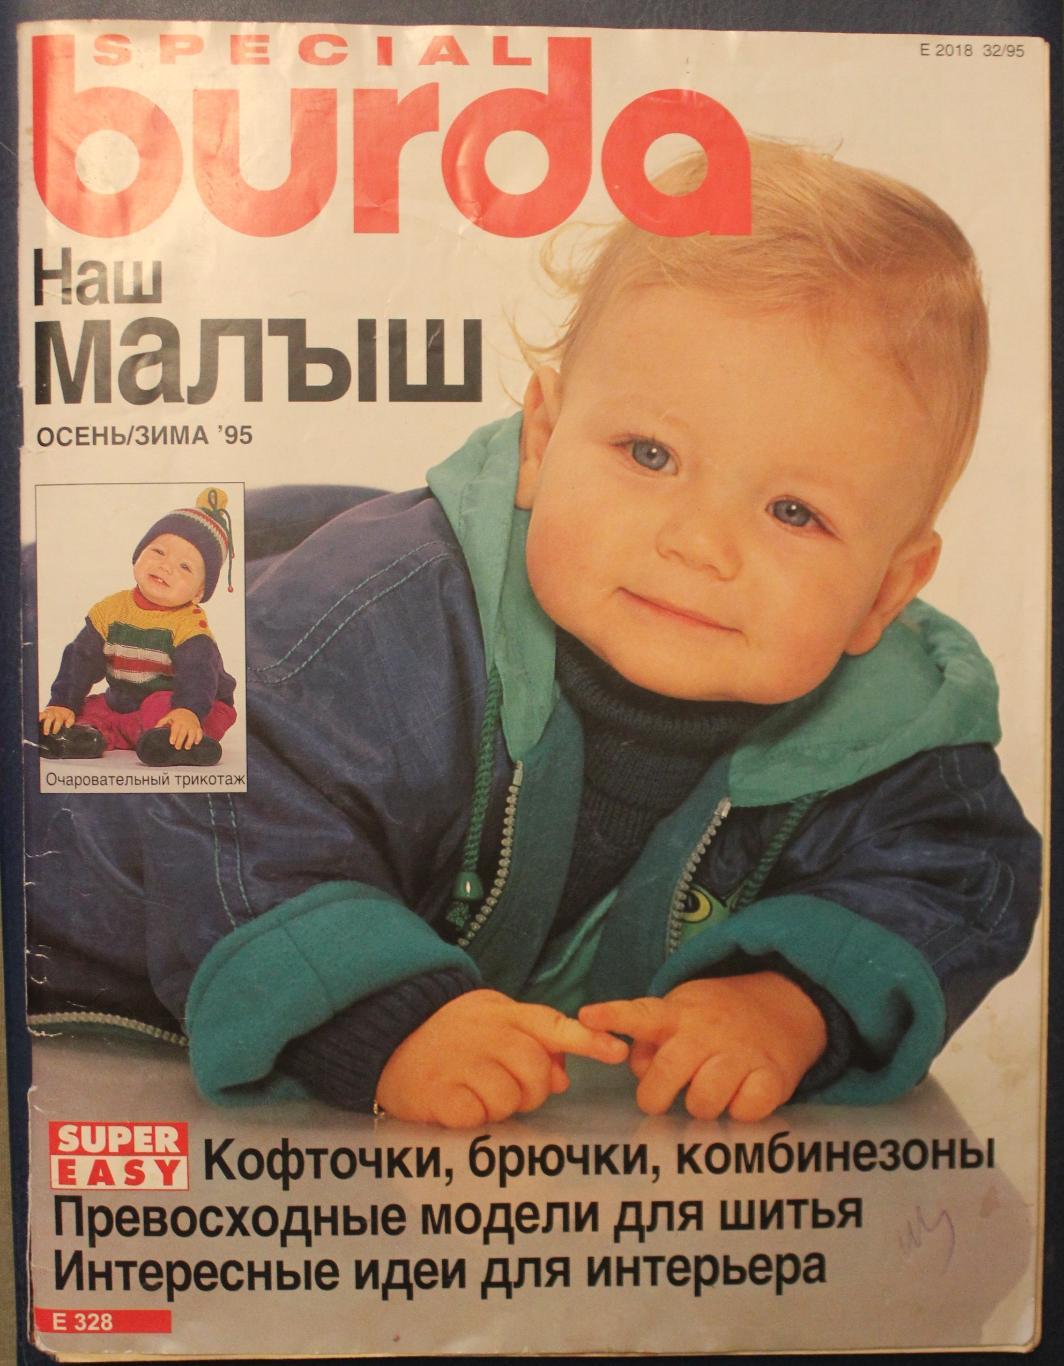 Журнал Бурда. Наш малыш осень/зима 1995